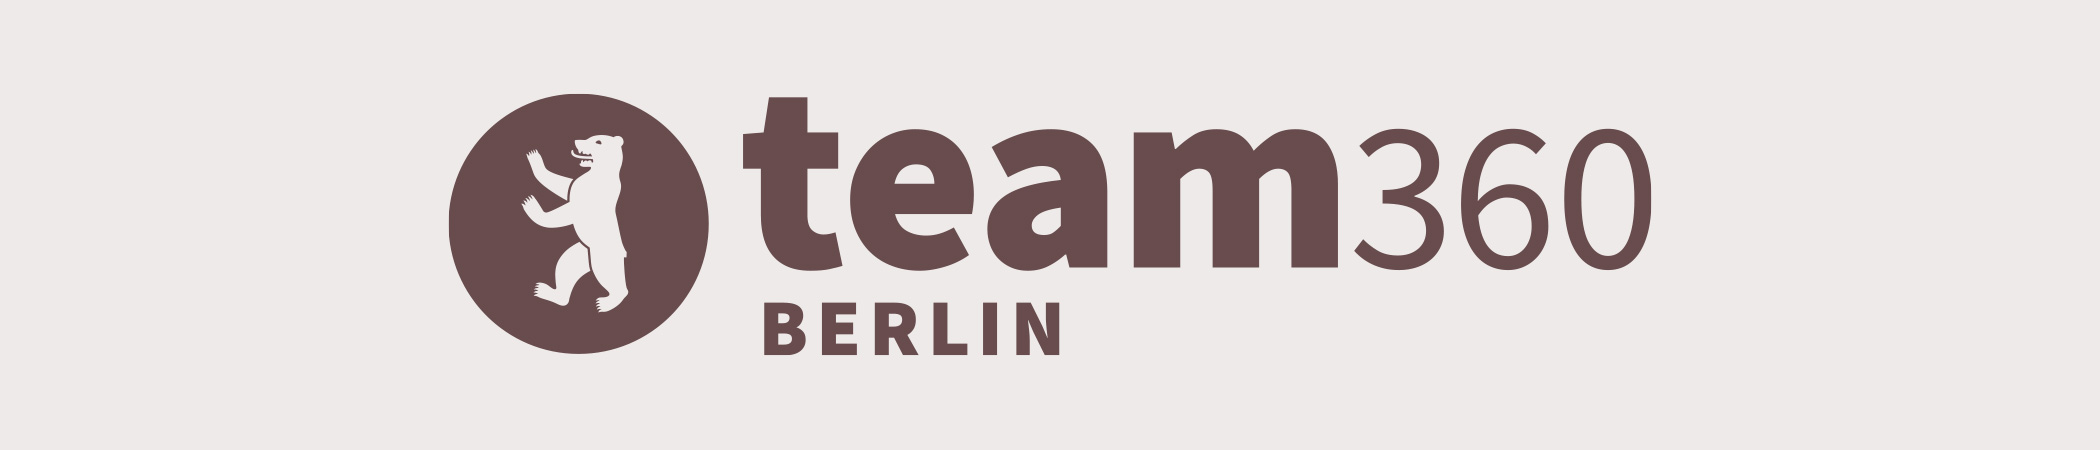 Team Berlin | 360 Grad Rundgänge rund um Berlin